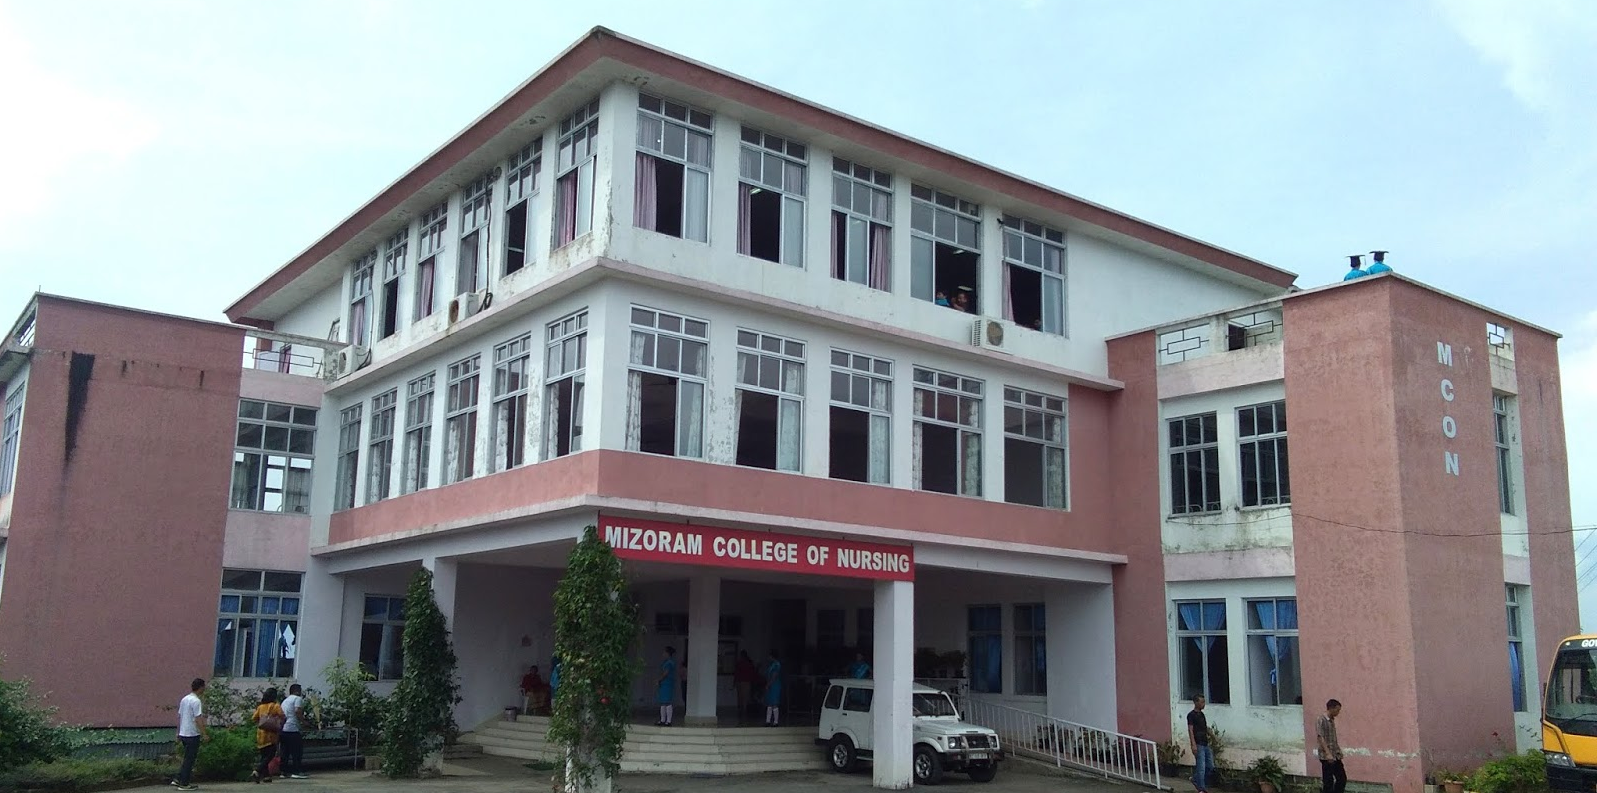 Mizoram College of Nursing, Aizawl